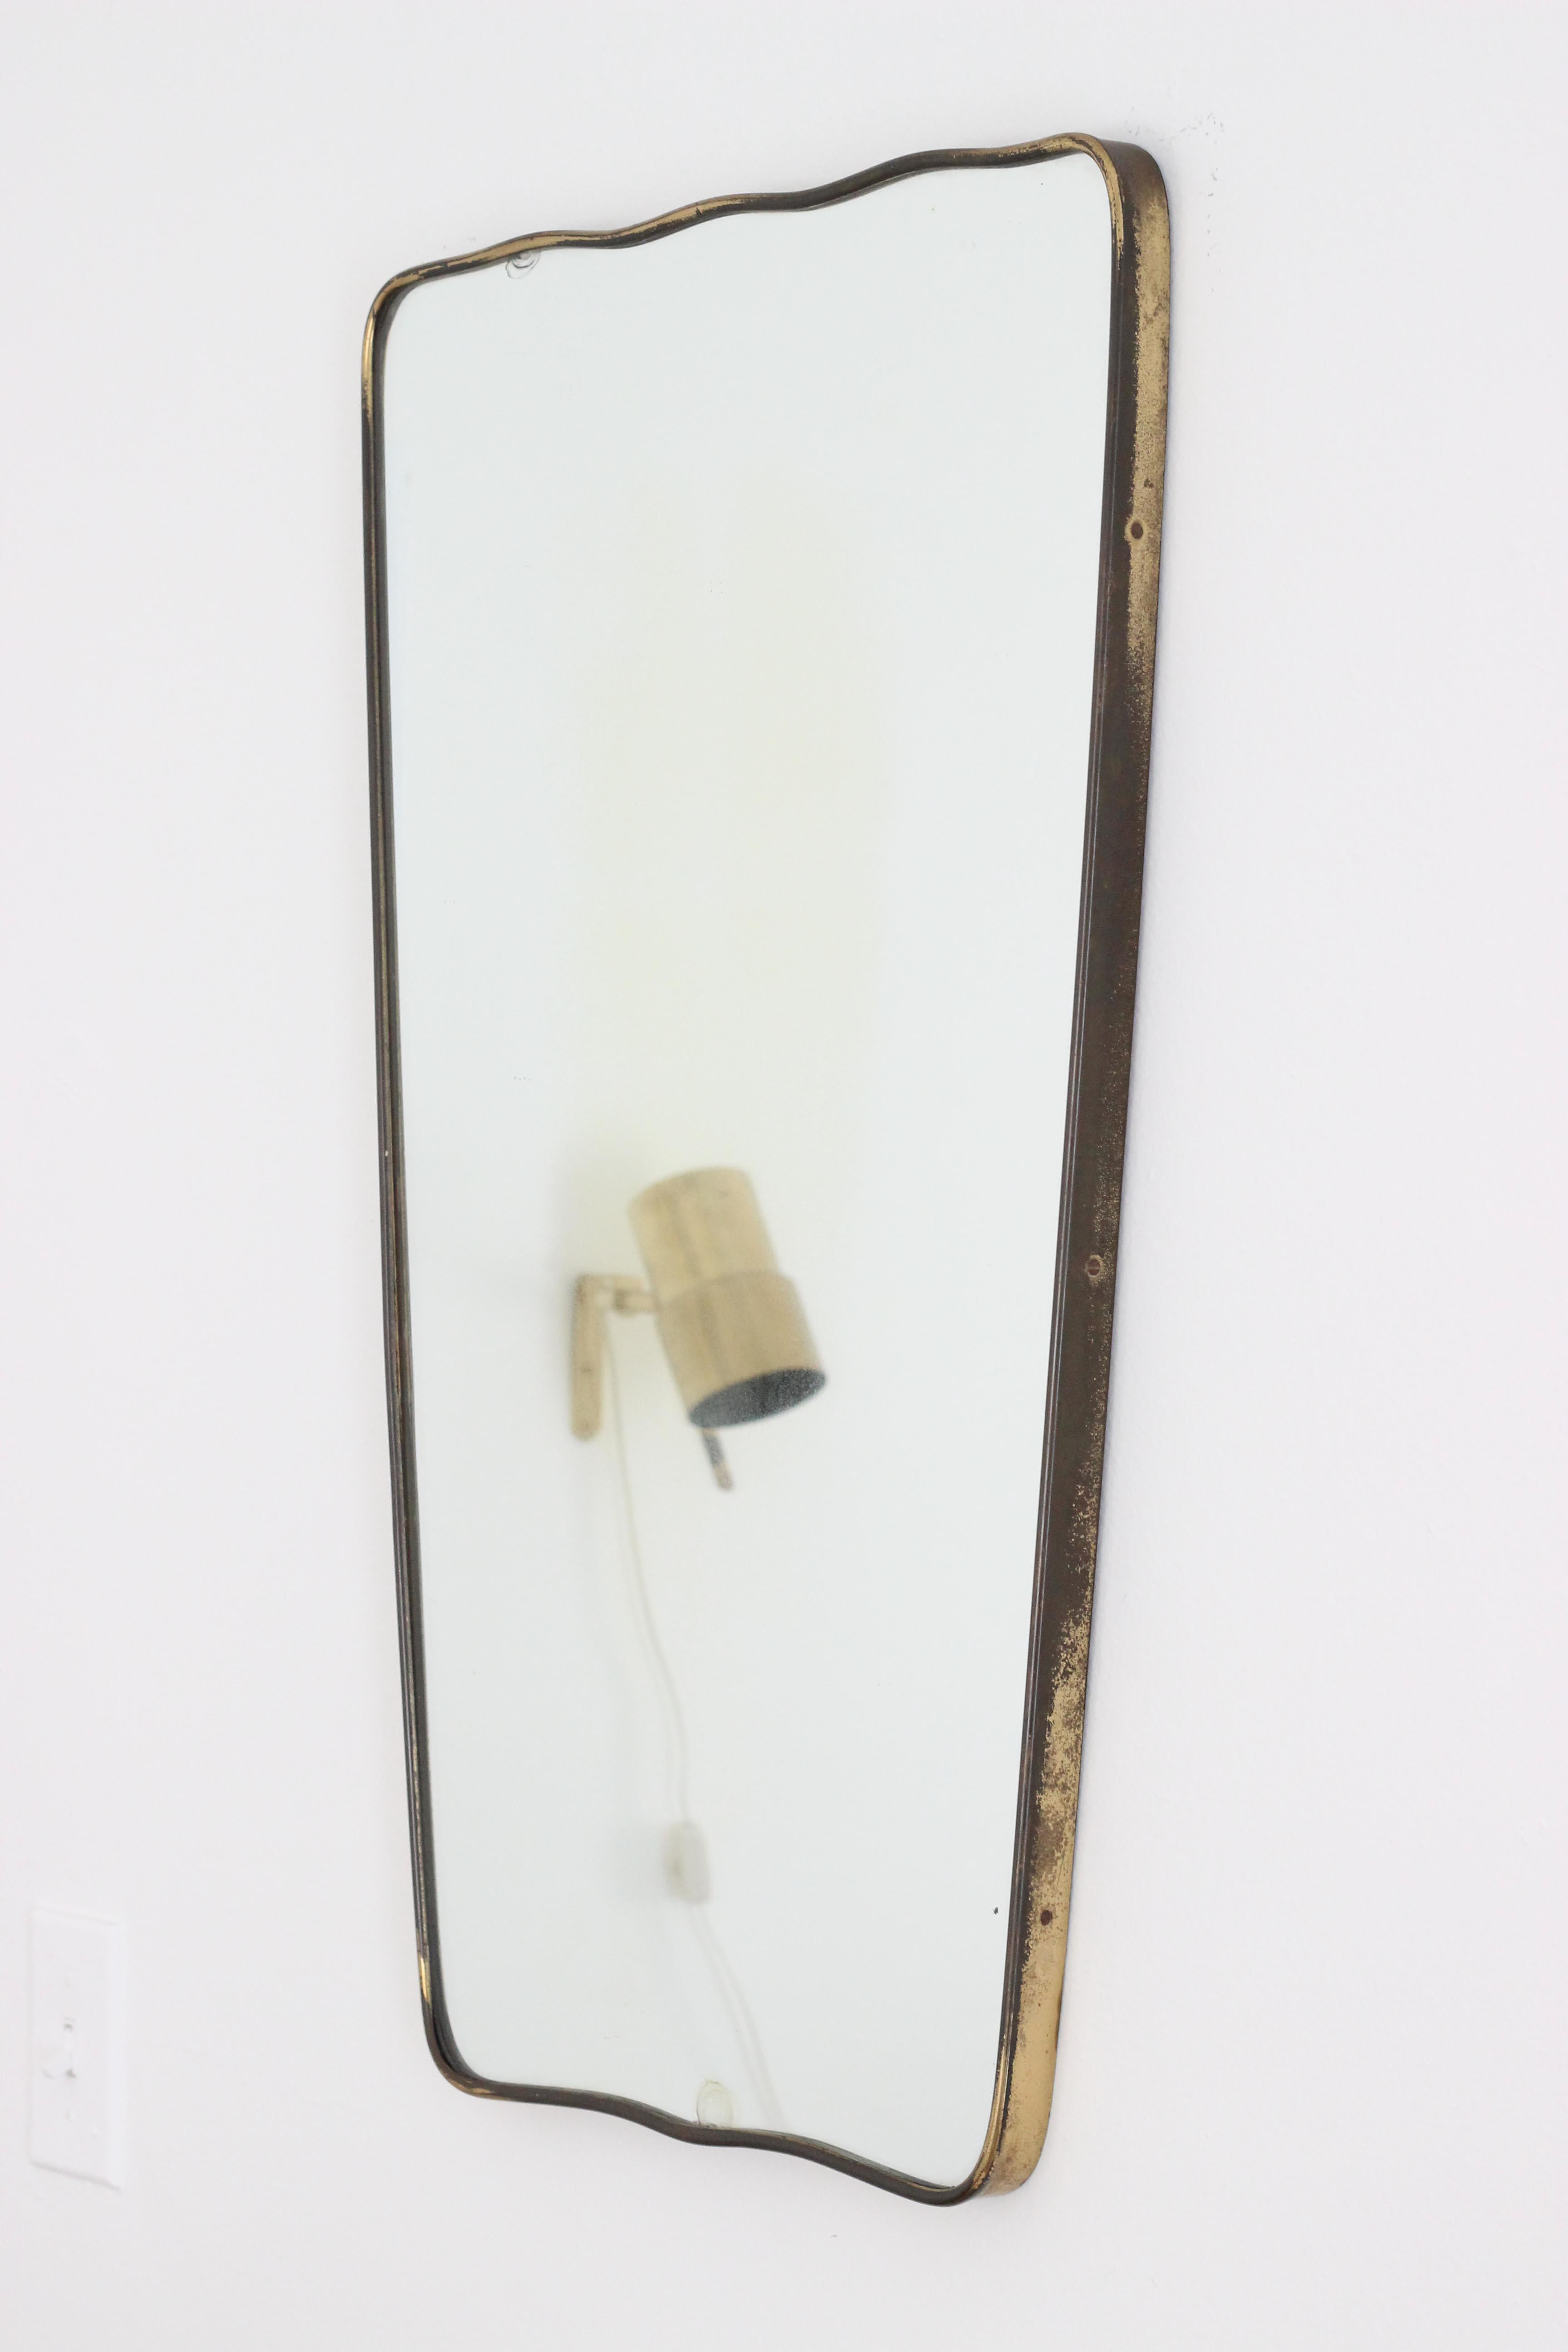 Vintage Italian Brass Mirror by Gio Ponti, Italy, 1950s Organic Wall Mirror Rare 3